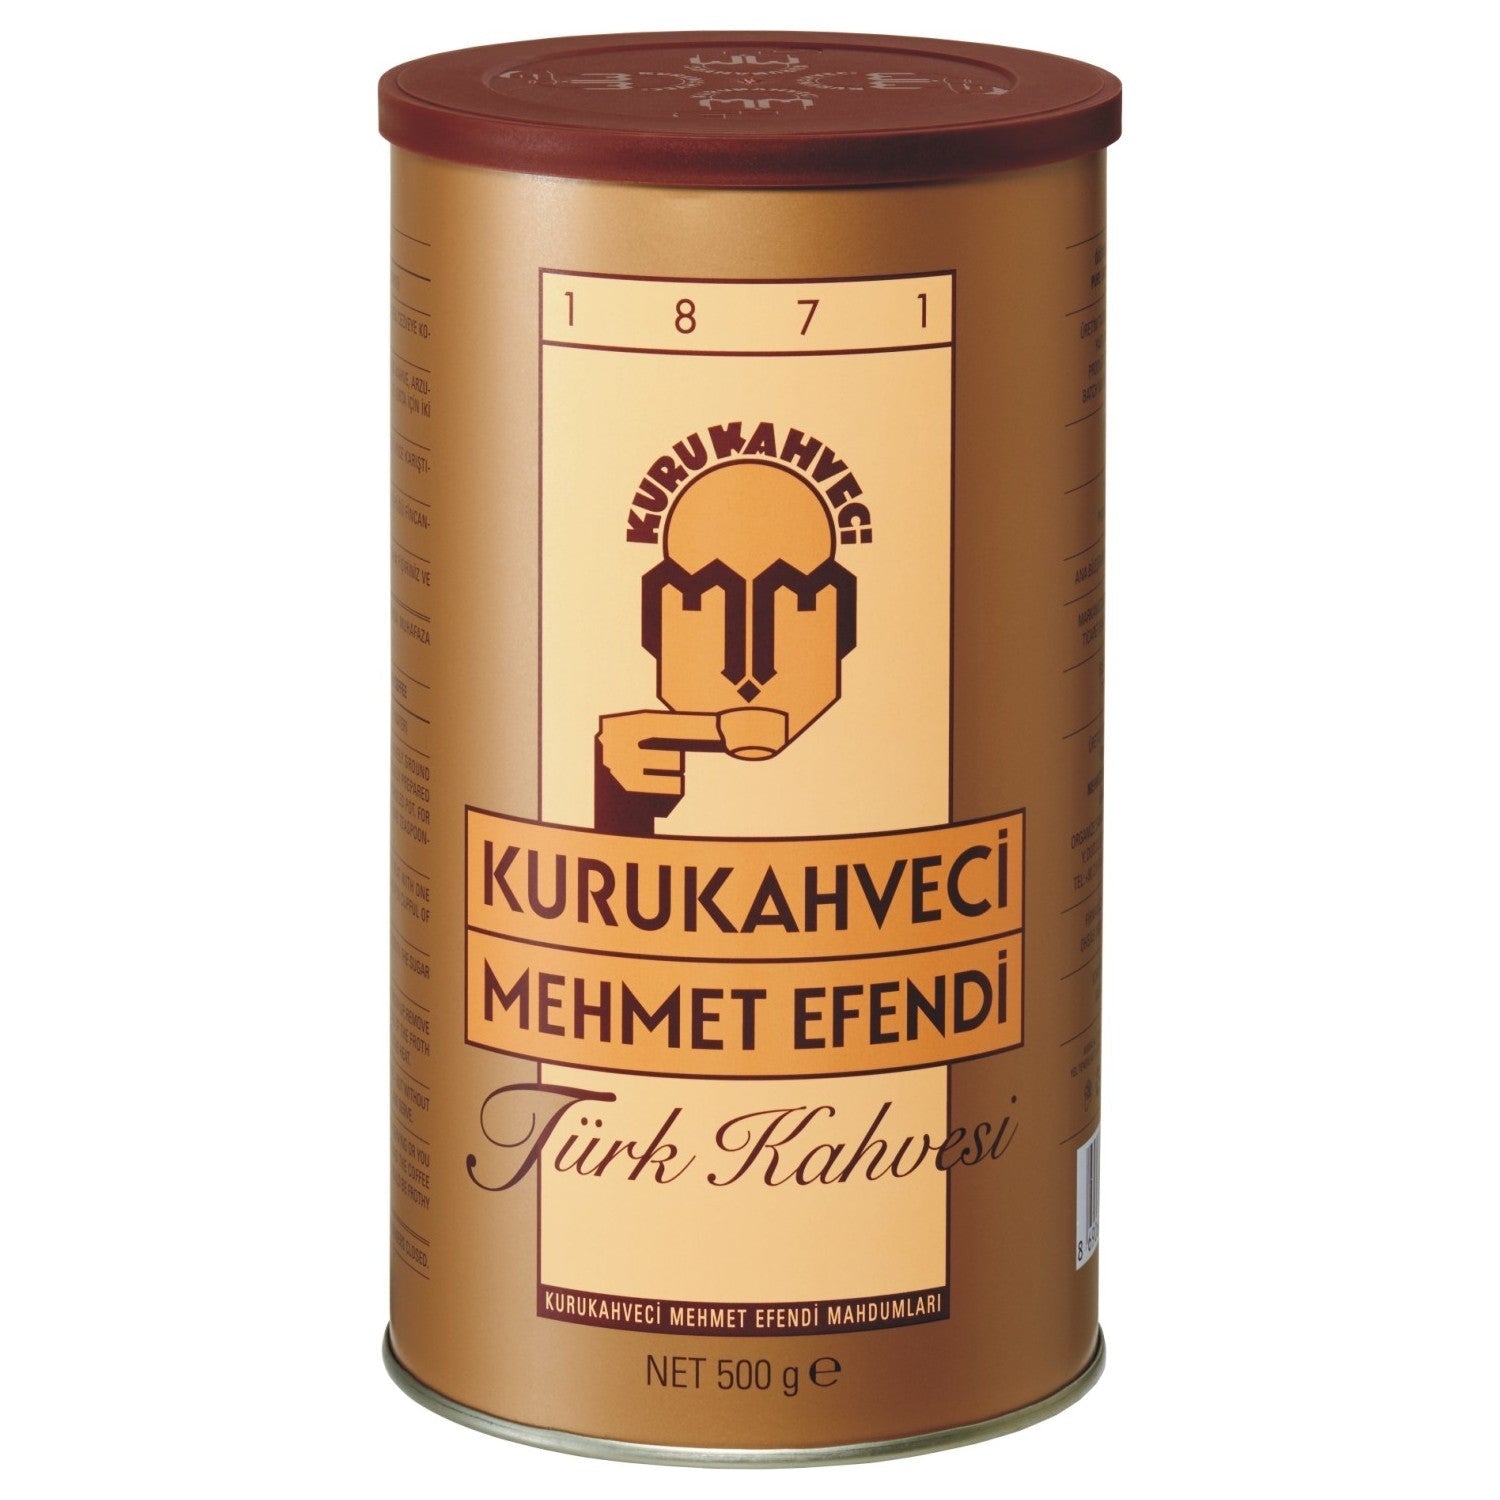 Kurukahveci Mehmet Efendi Turkish Coffee (500G) - Aytac Foods